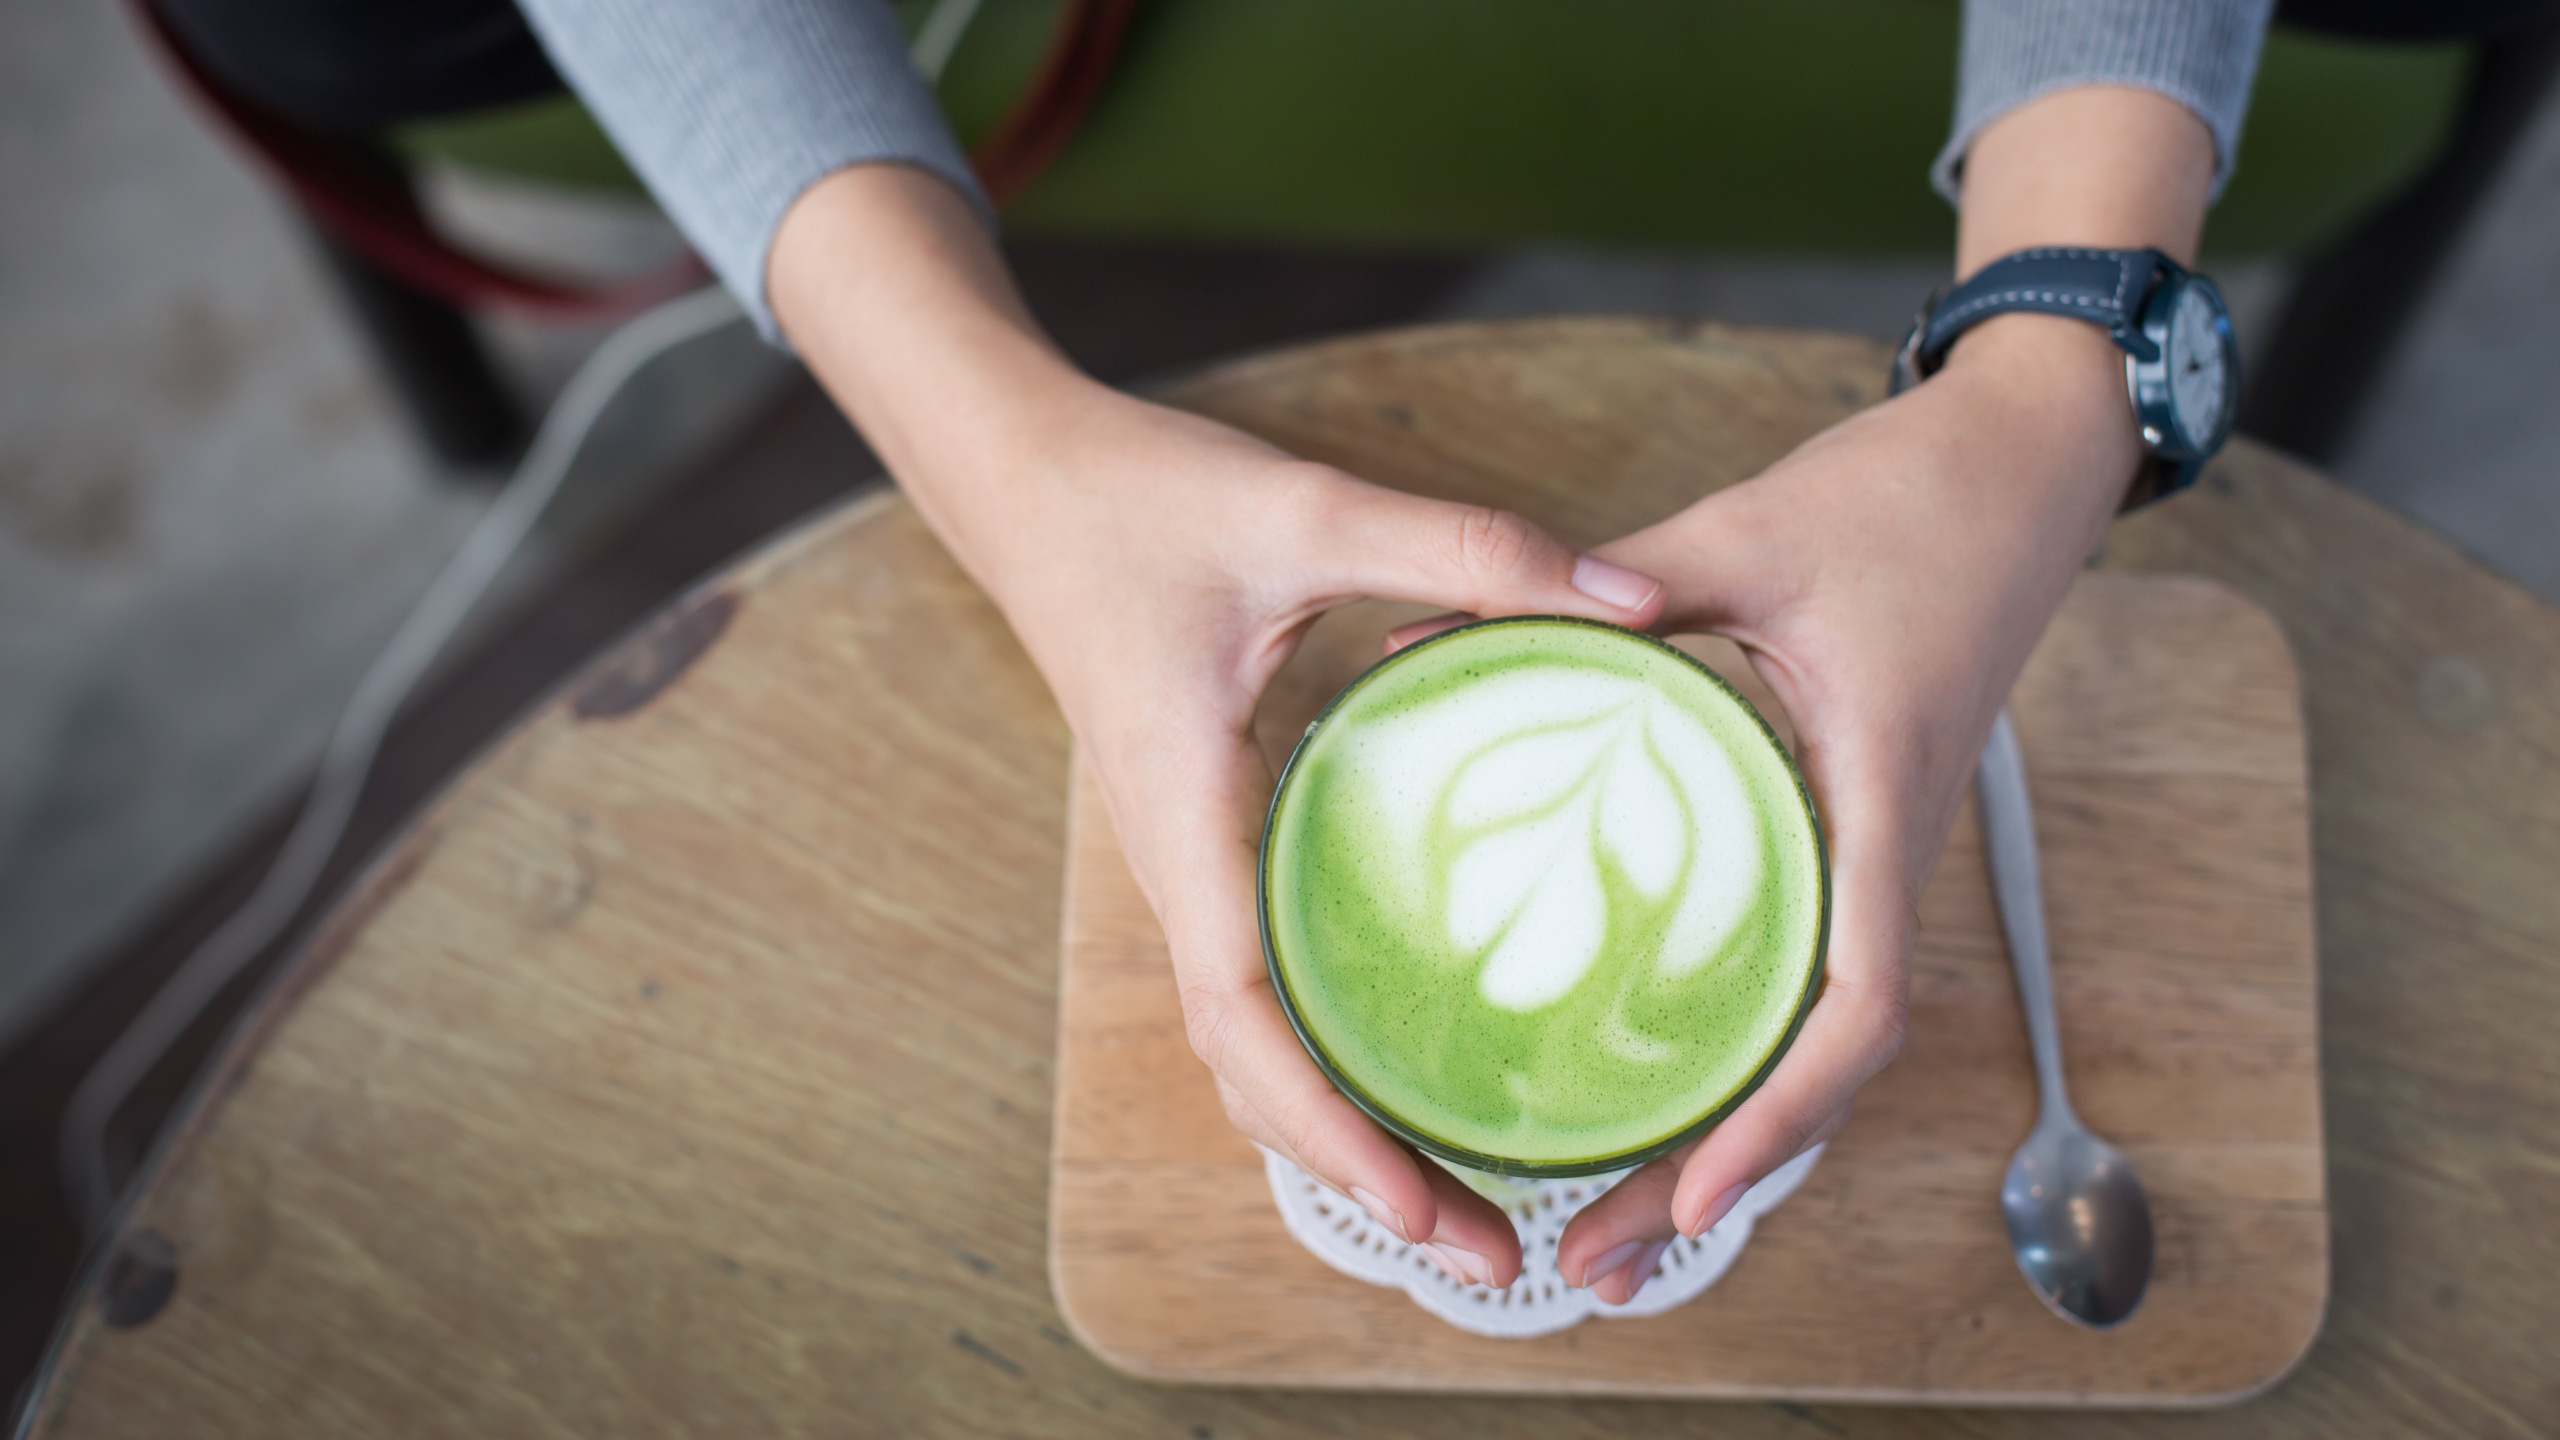 拿铁咖啡, 绿茶, 绿色的, 手, 食品 壁纸 2560x1440 允许